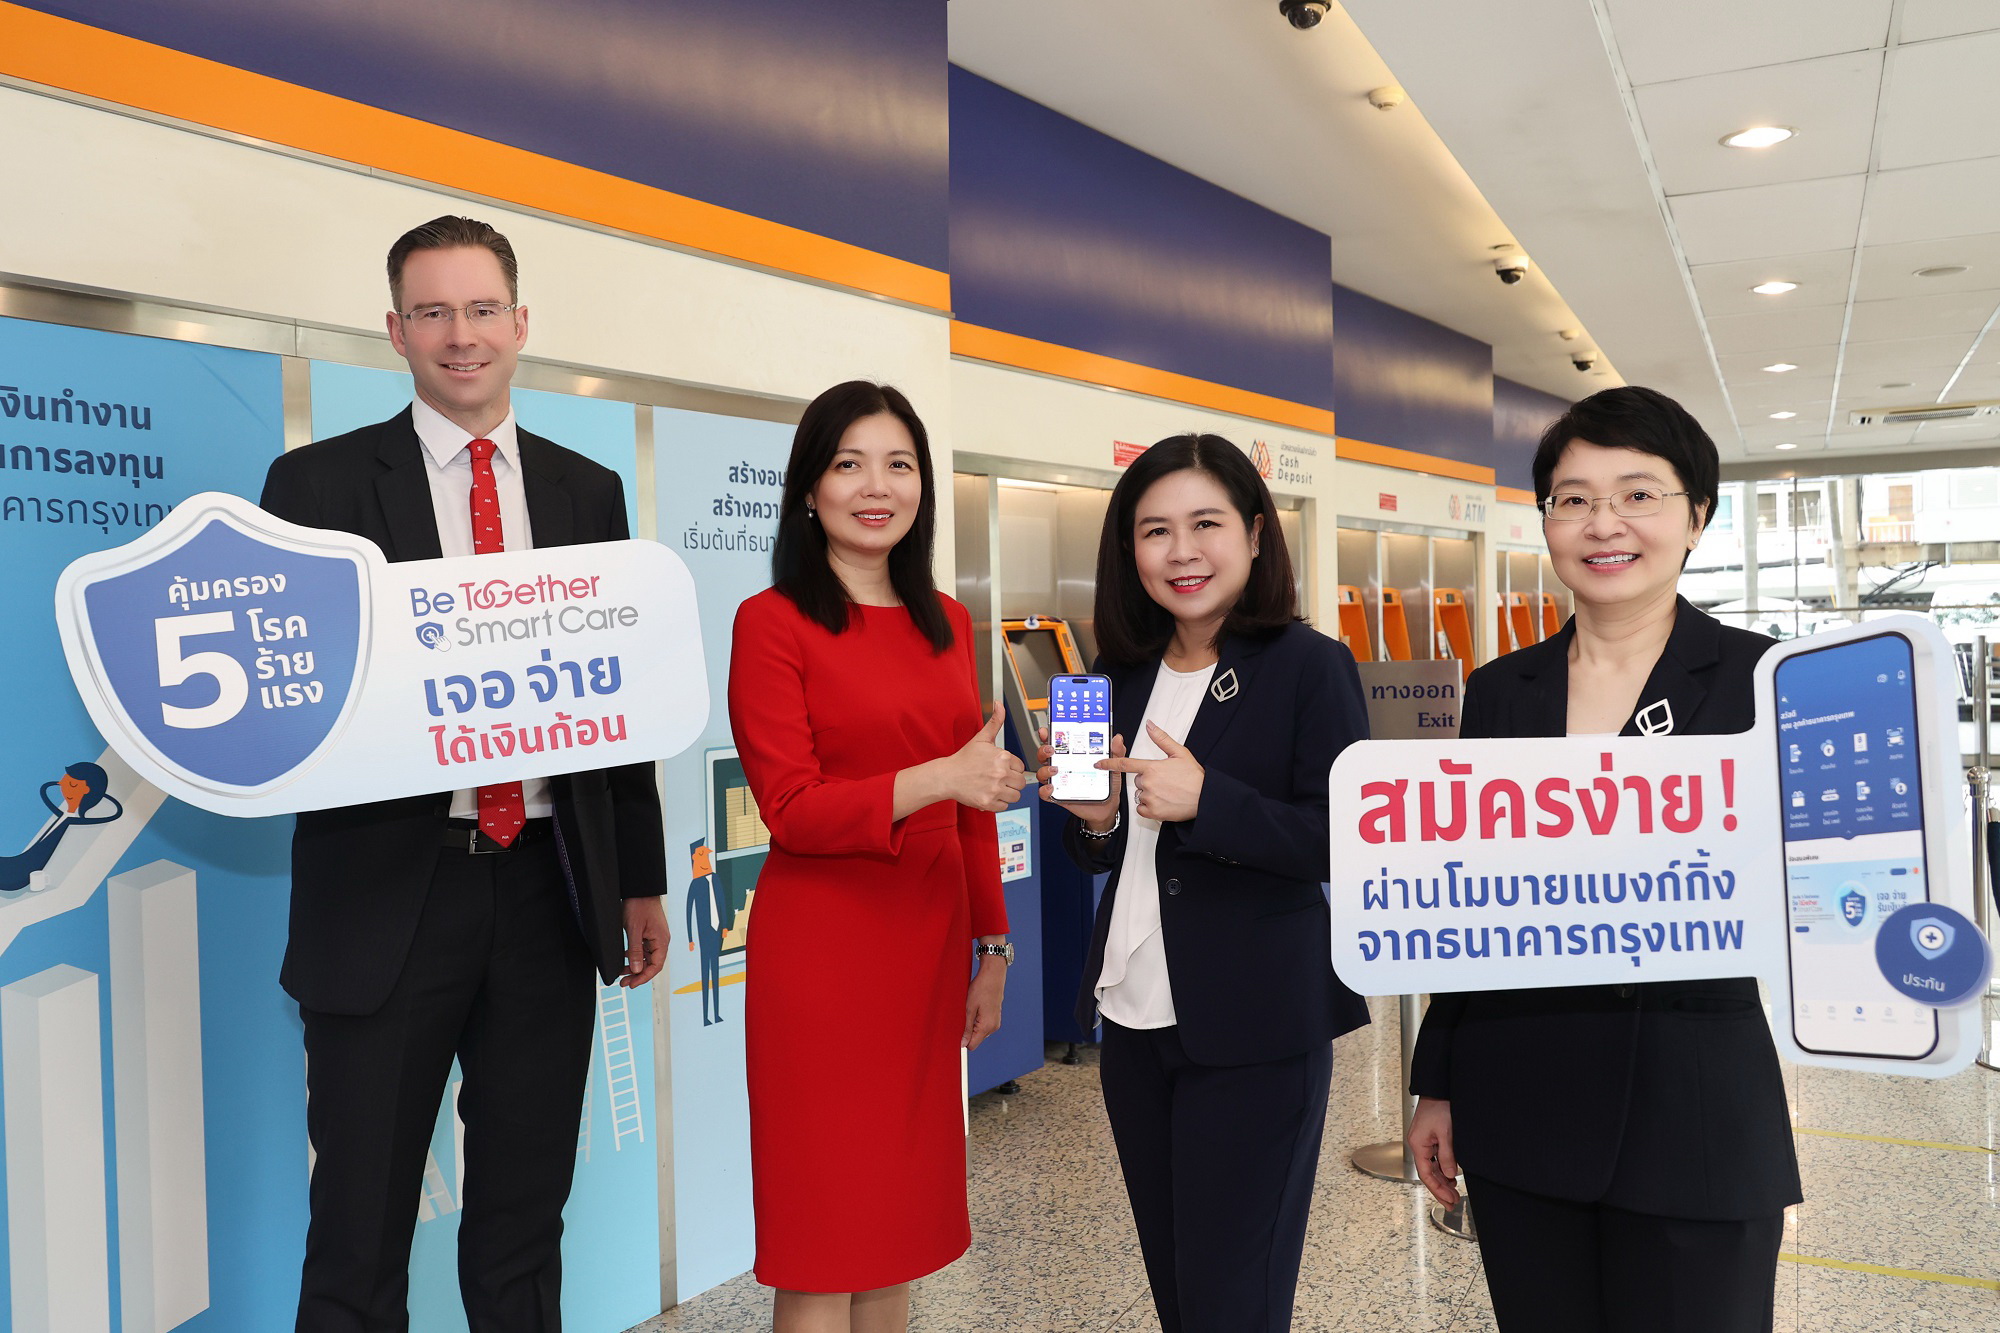 เอไอเอ ประเทศไทย จับมือธนาคารกรุงเทพ ต่อยอดความสำเร็จ